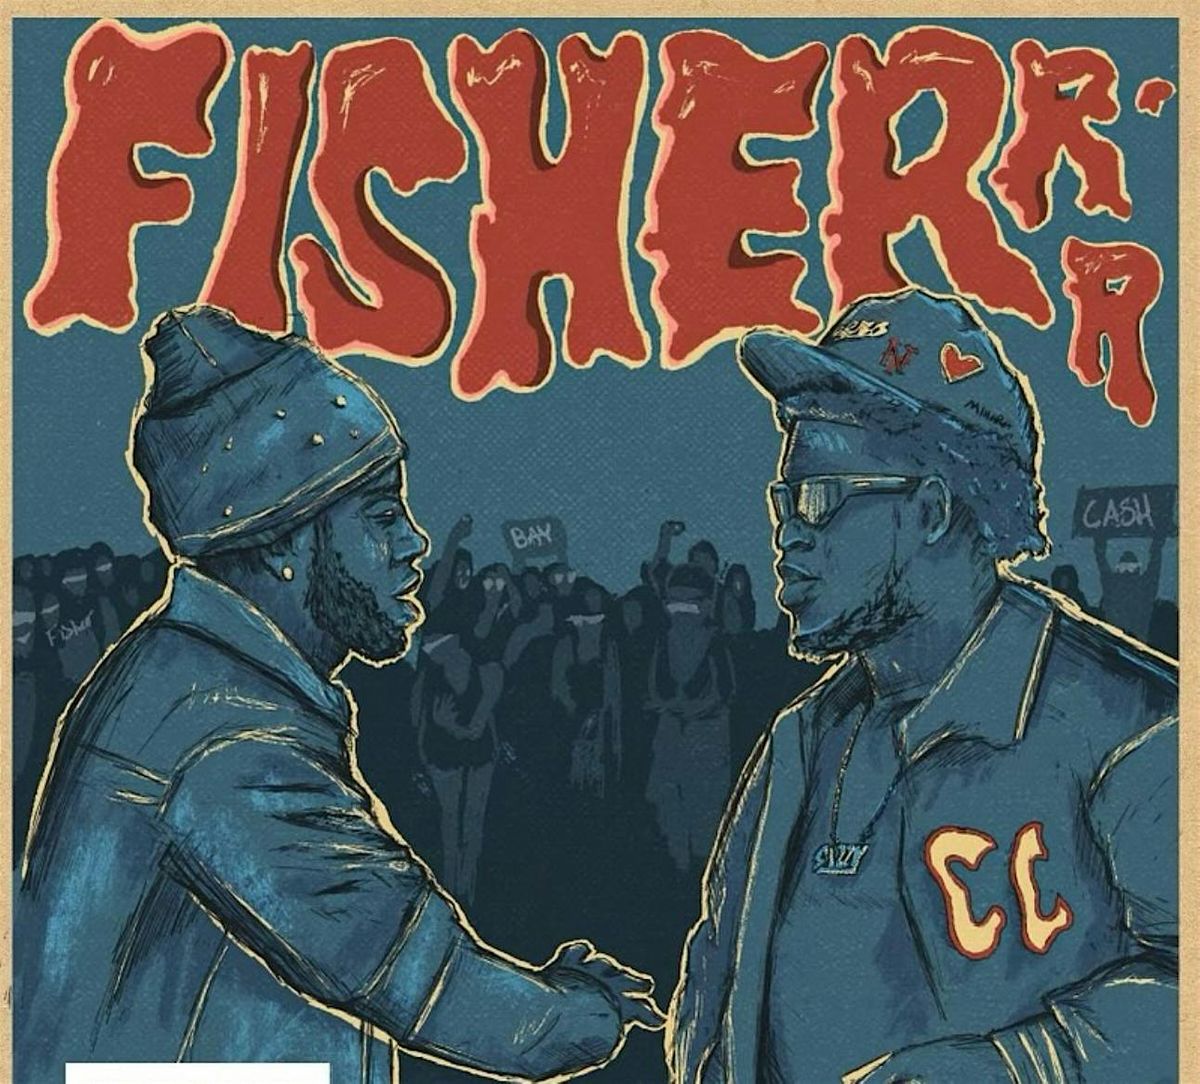 Fisherrr Friday